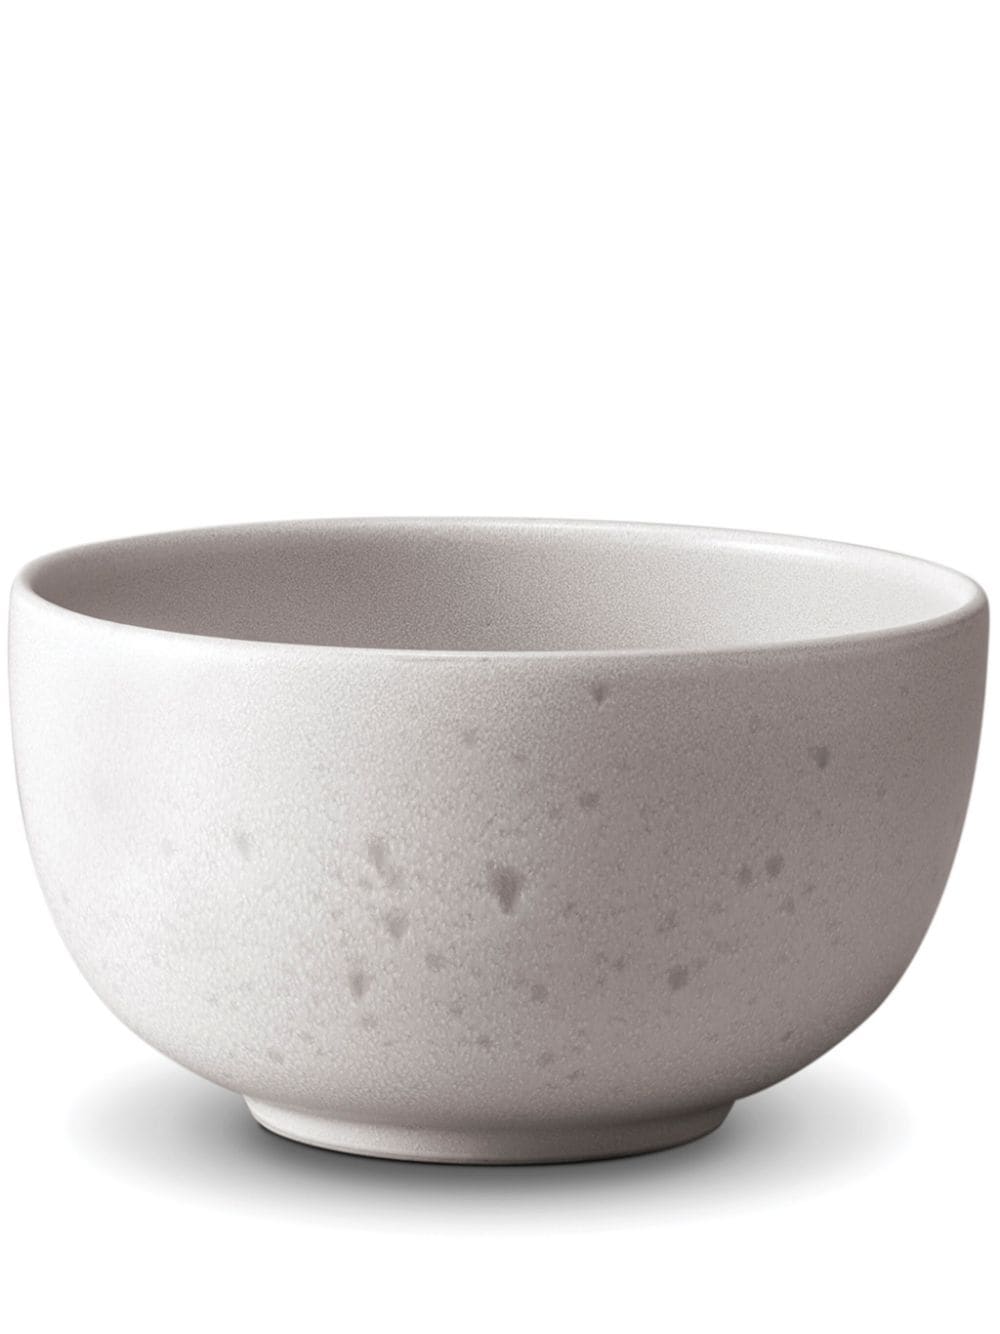 L'Objet Terra porcelain cereal bowl (14cm) - White von L'Objet